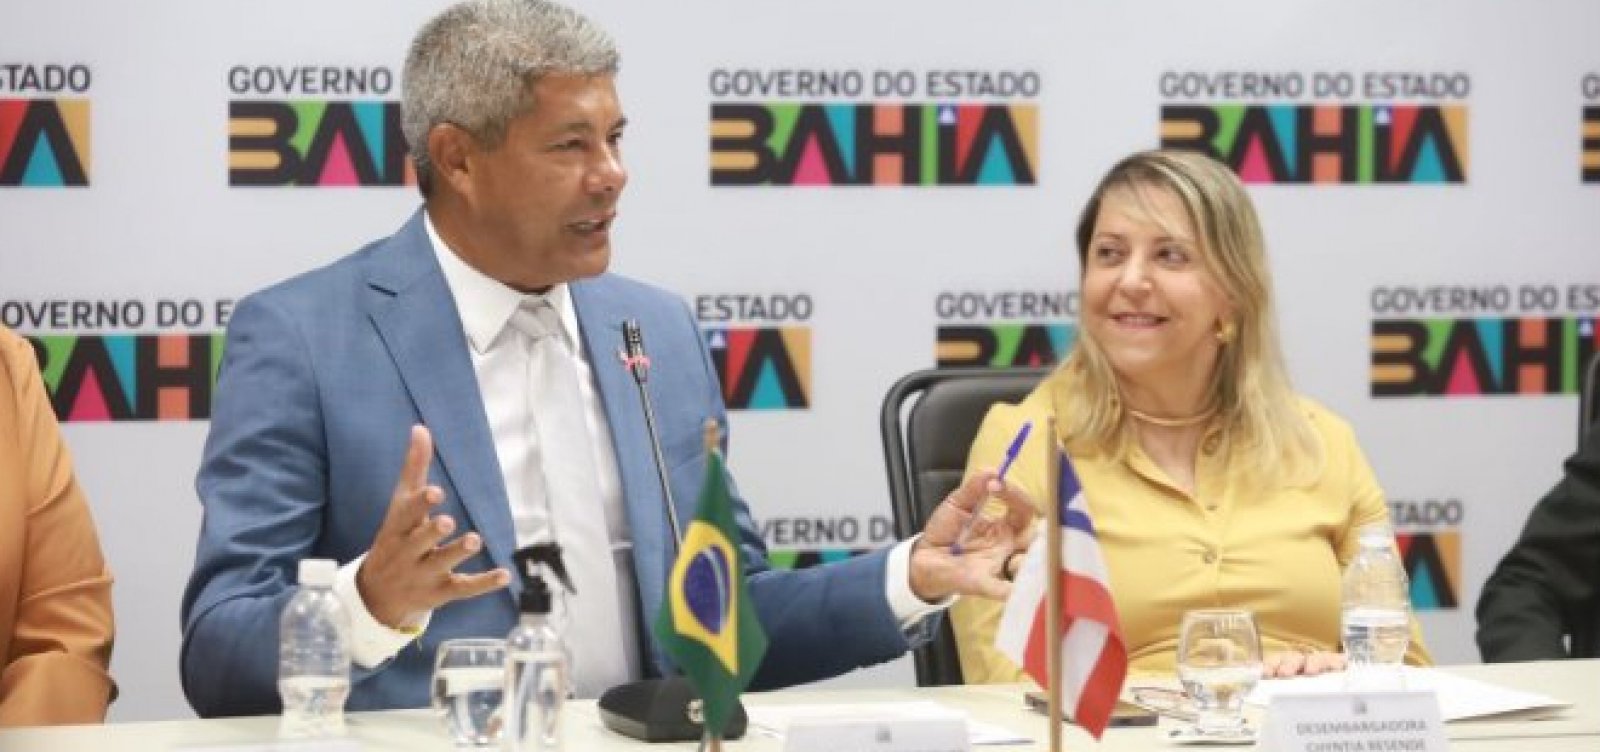 Cynthia Resende, presidente do TJ-BA, passa a ser a governadora da Bahia em exercício a partir desta manhã